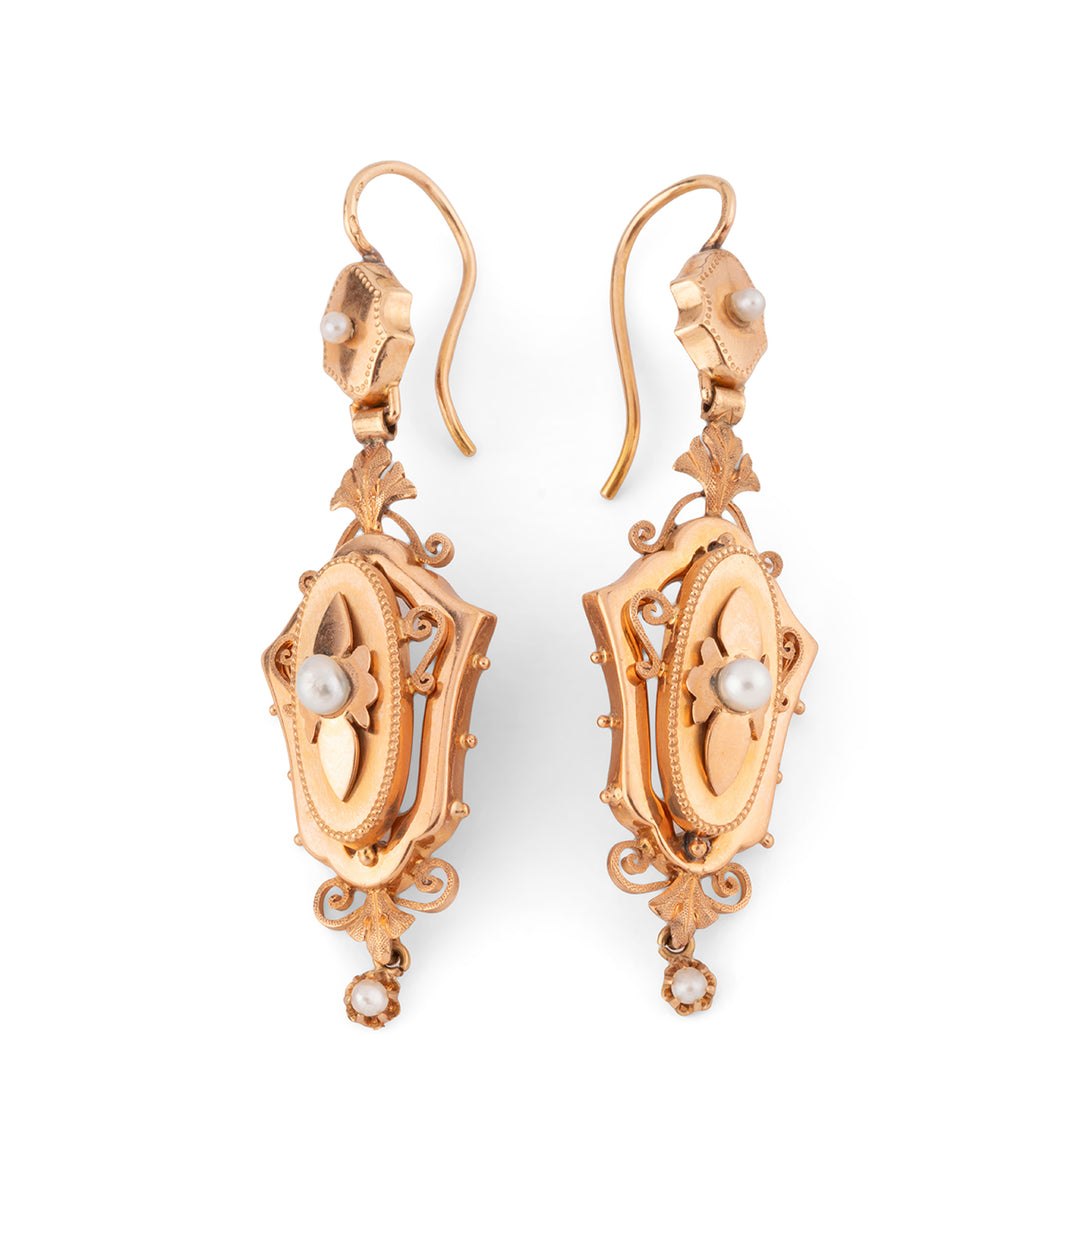 Anciennes boucles d'oreilles en or et perles "Ebba" - Caillou Paris 